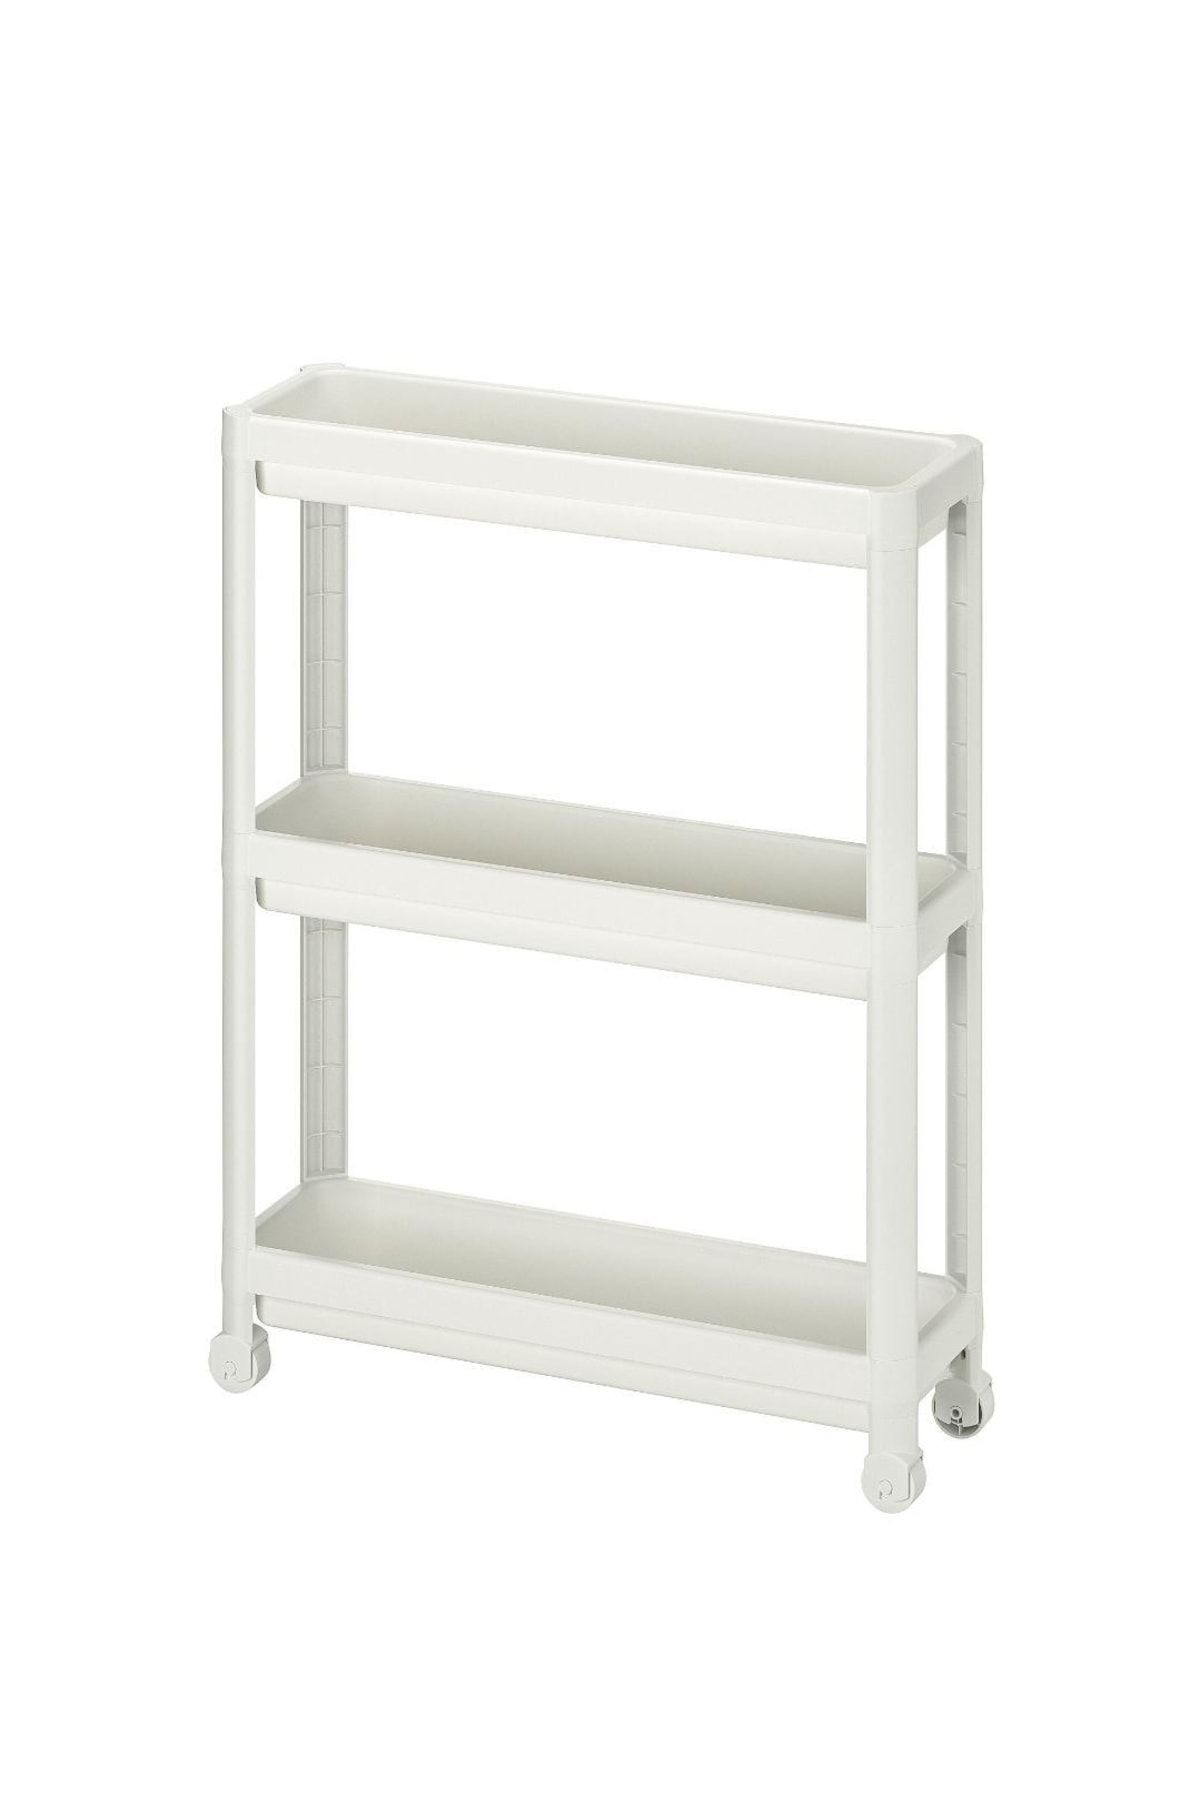 IKEA Vesken Servis Sehpası, Tekerlekli Çok Amaçlı Raf Beyaz, 54x18x71 Cm